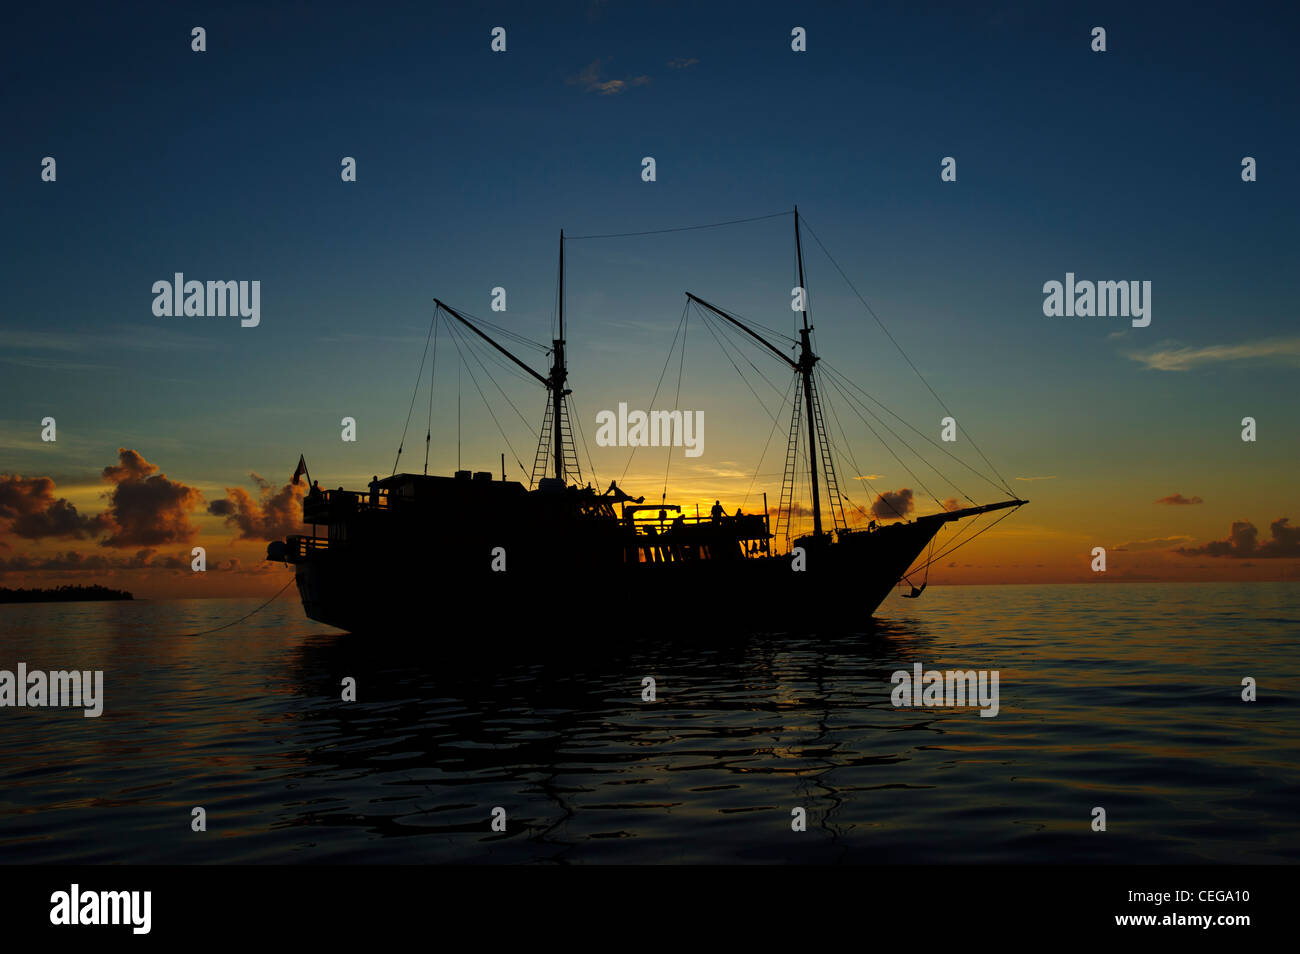 Die Damai Liveaboard vertäut in Lucipara Atoll Banada Meer, Indonesien. Sonnenuntergang erschossen. Eine schöne traditionelle Phinisi Schiff. Stockfoto